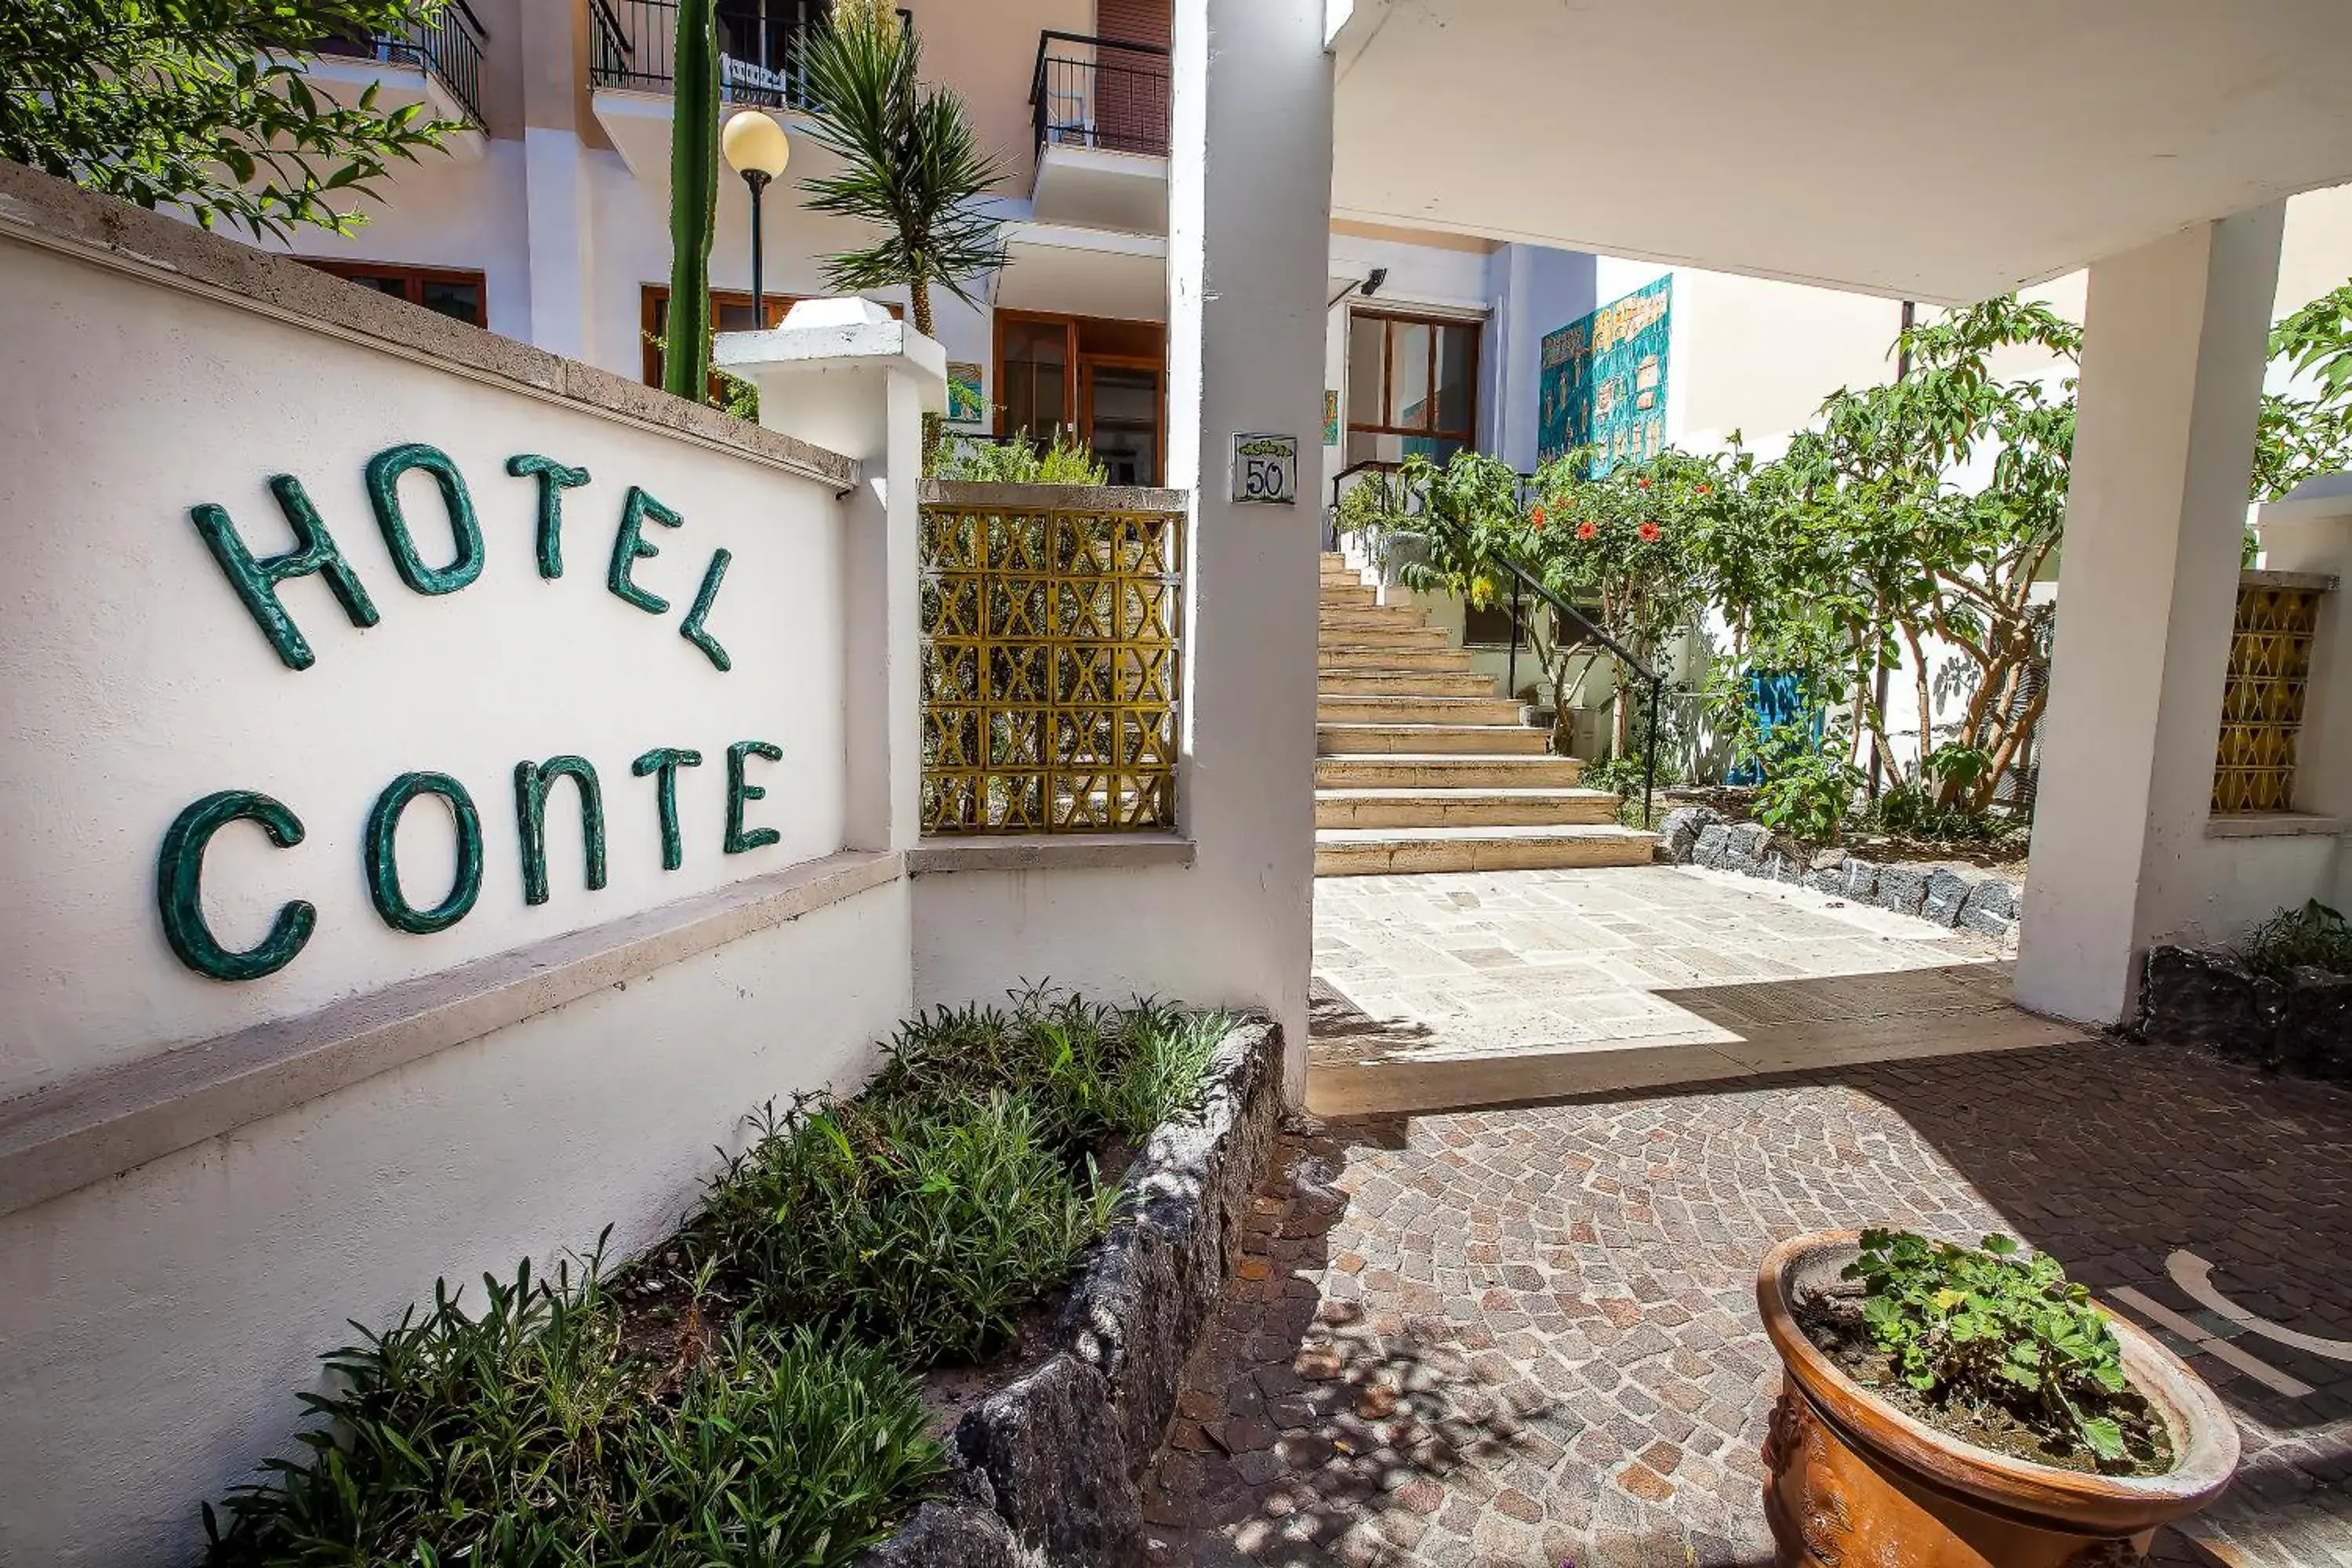 Facade/entrance in Hotel Conte